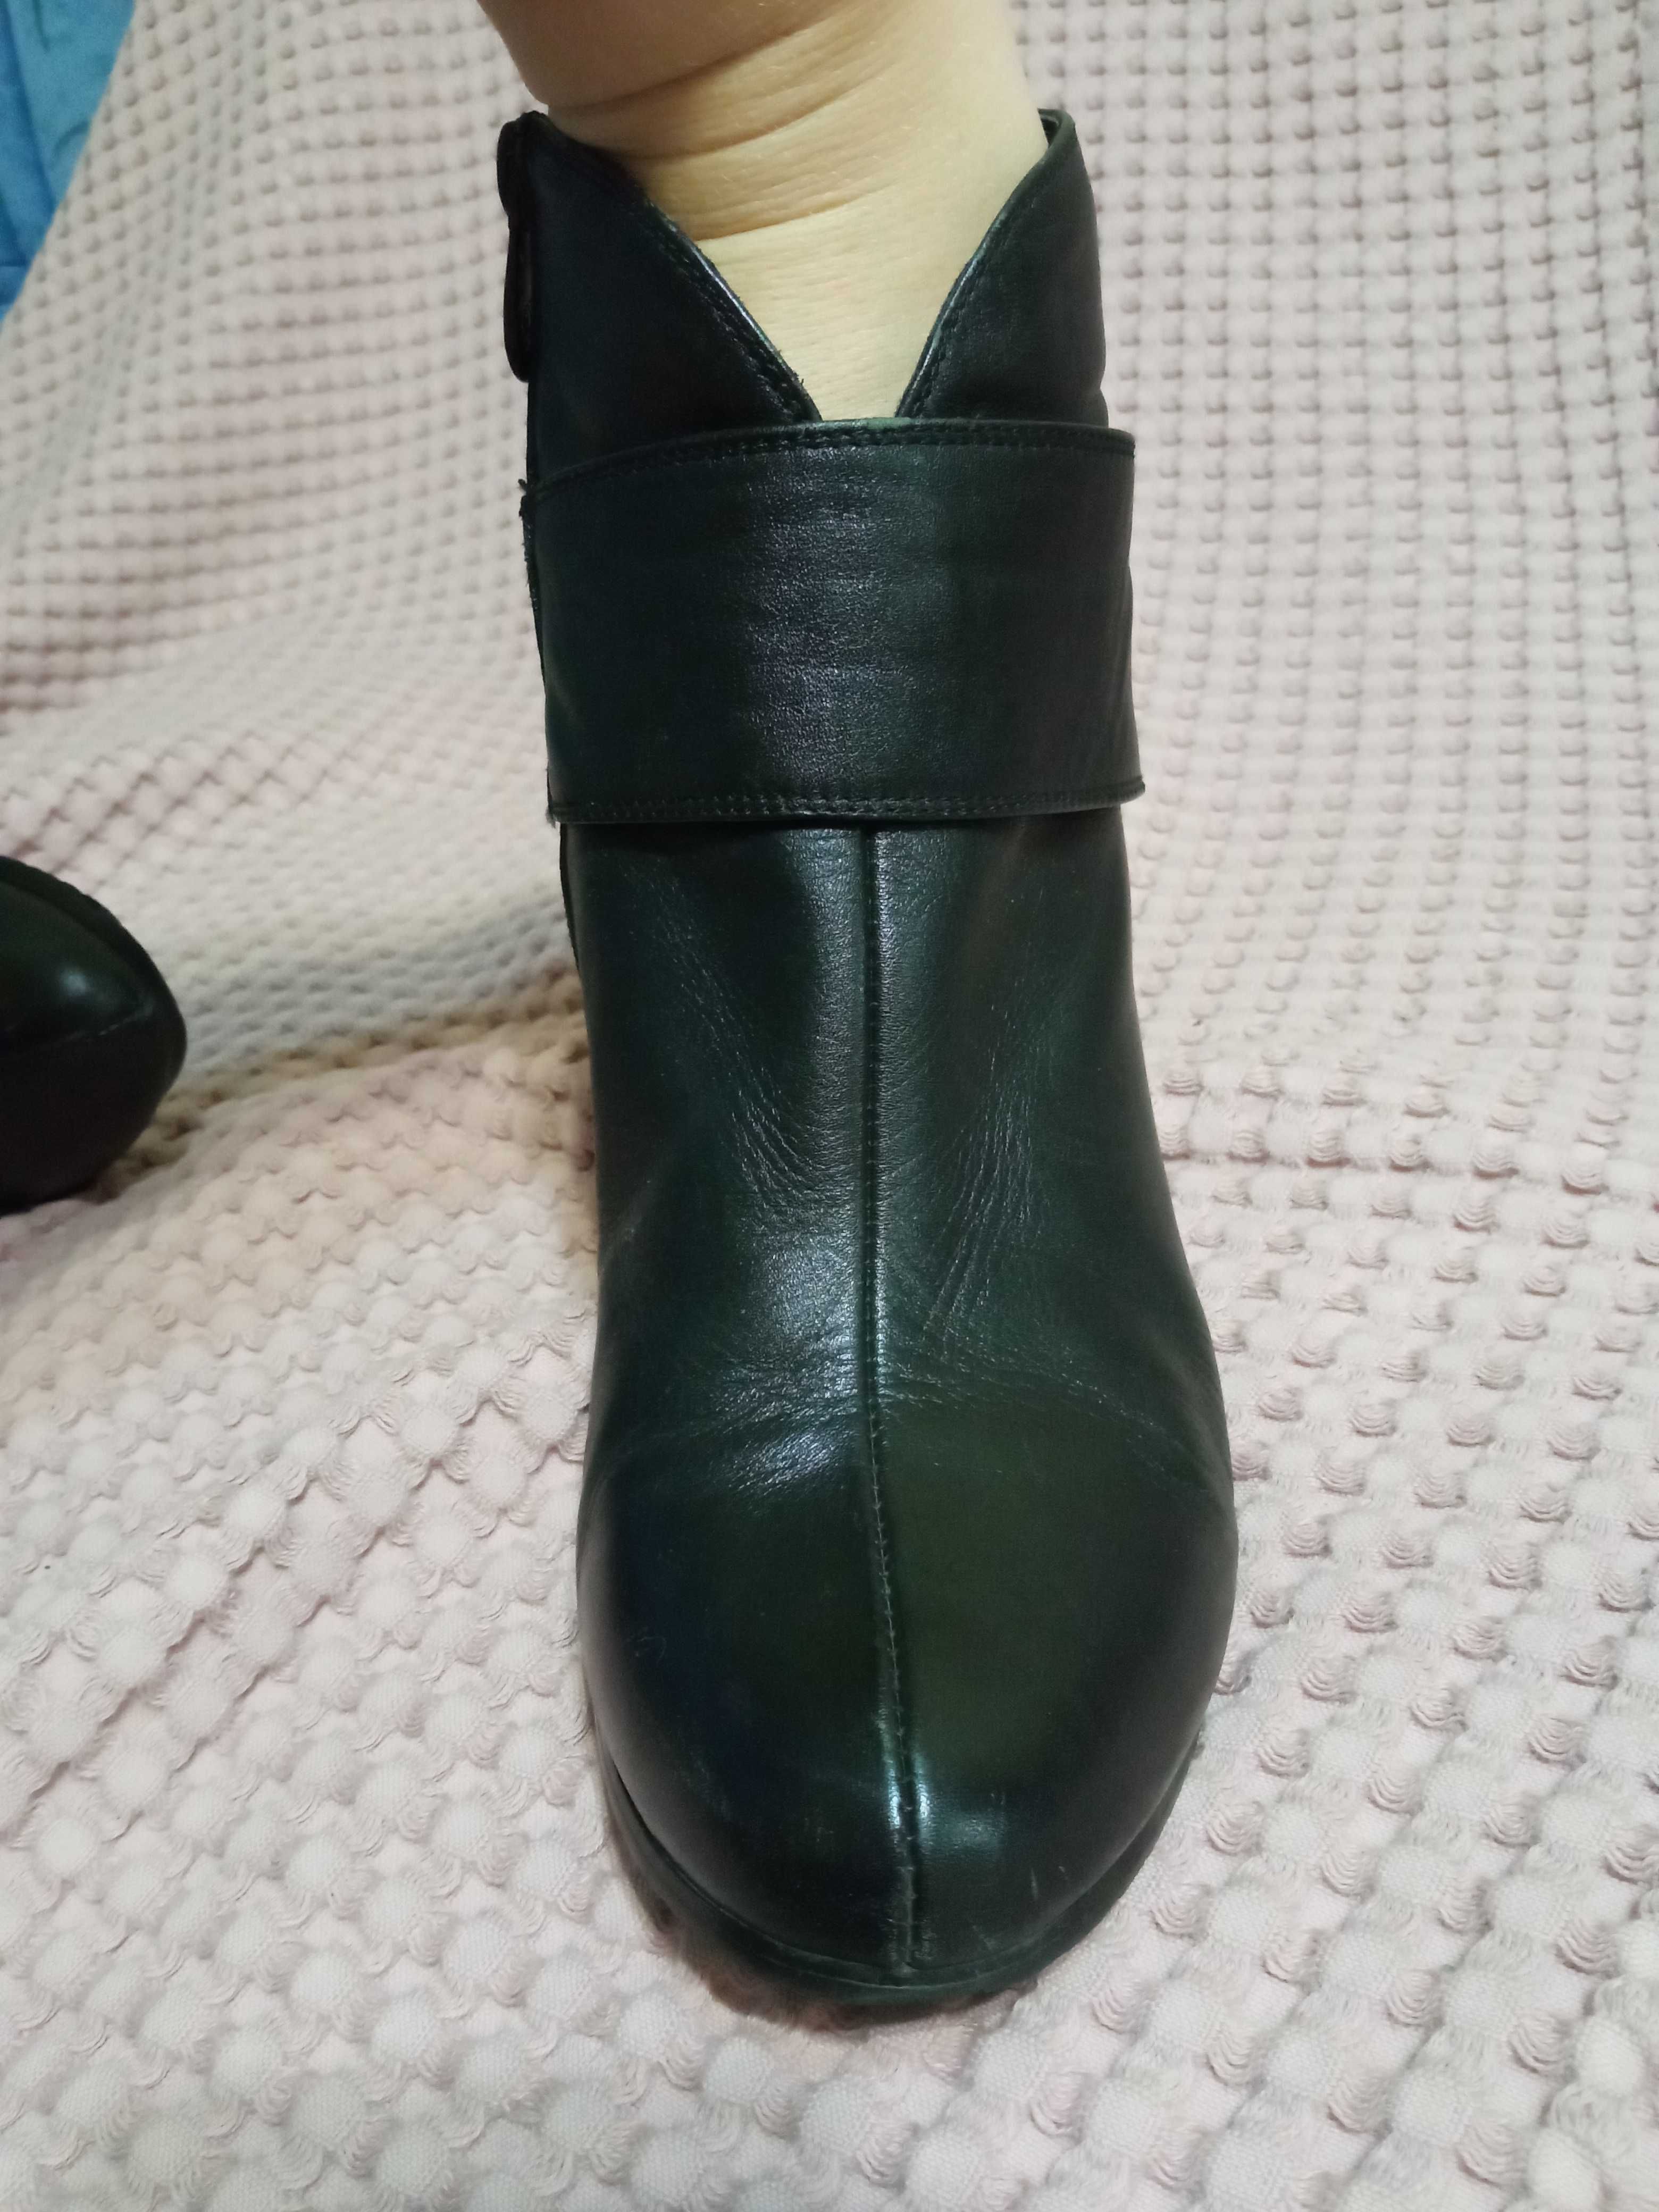 Ботинки , полуботинки кожаные осенние 41р в идеальном состоянии